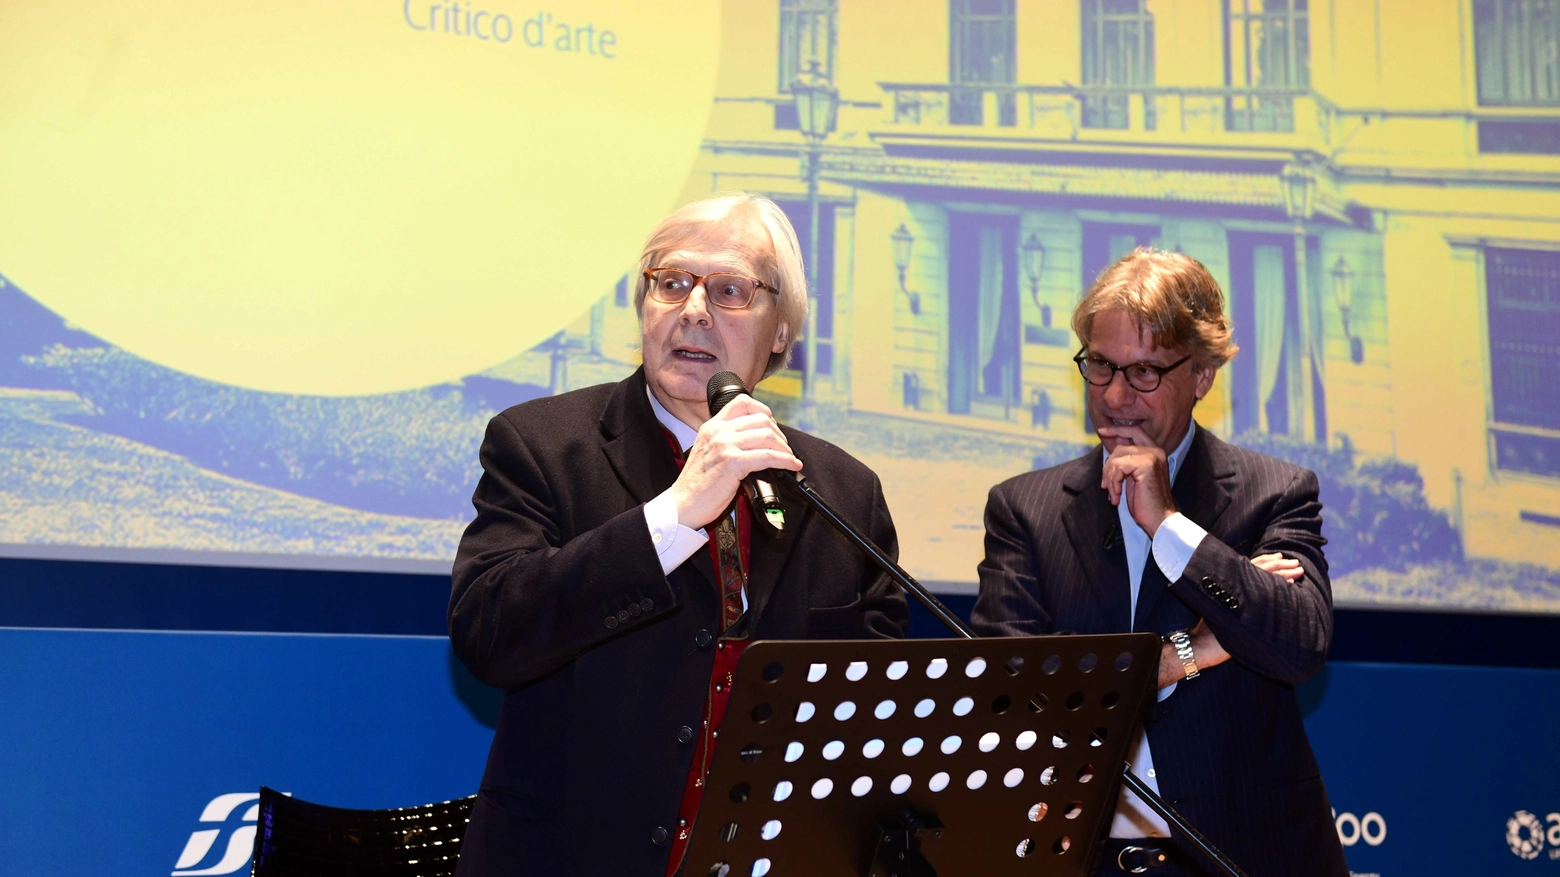 Milano, Vittorio Sgarbi annuncia le sue dimissioni all'evento di Porro 'La ripartenza' (Imagoeconomica)